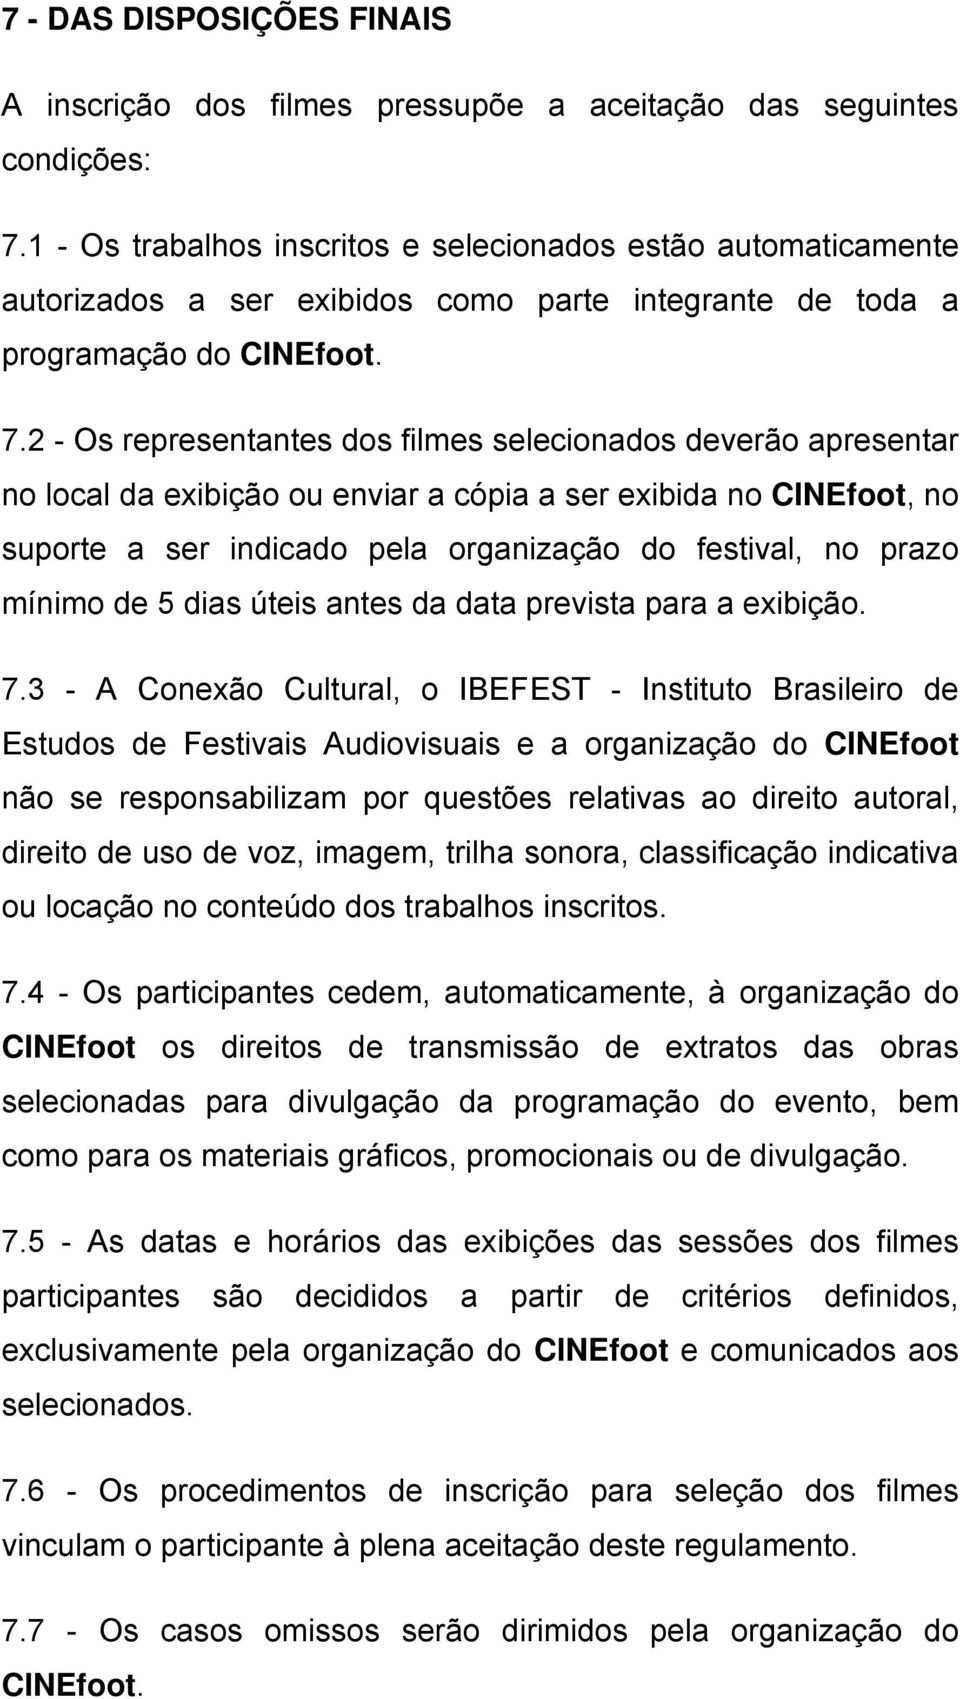 2 - Os representantes dos filmes selecionados deverão apresentar no local da exibição ou enviar a cópia a ser exibida no CINEfoot, no suporte a ser indicado pela organização do festival, no prazo